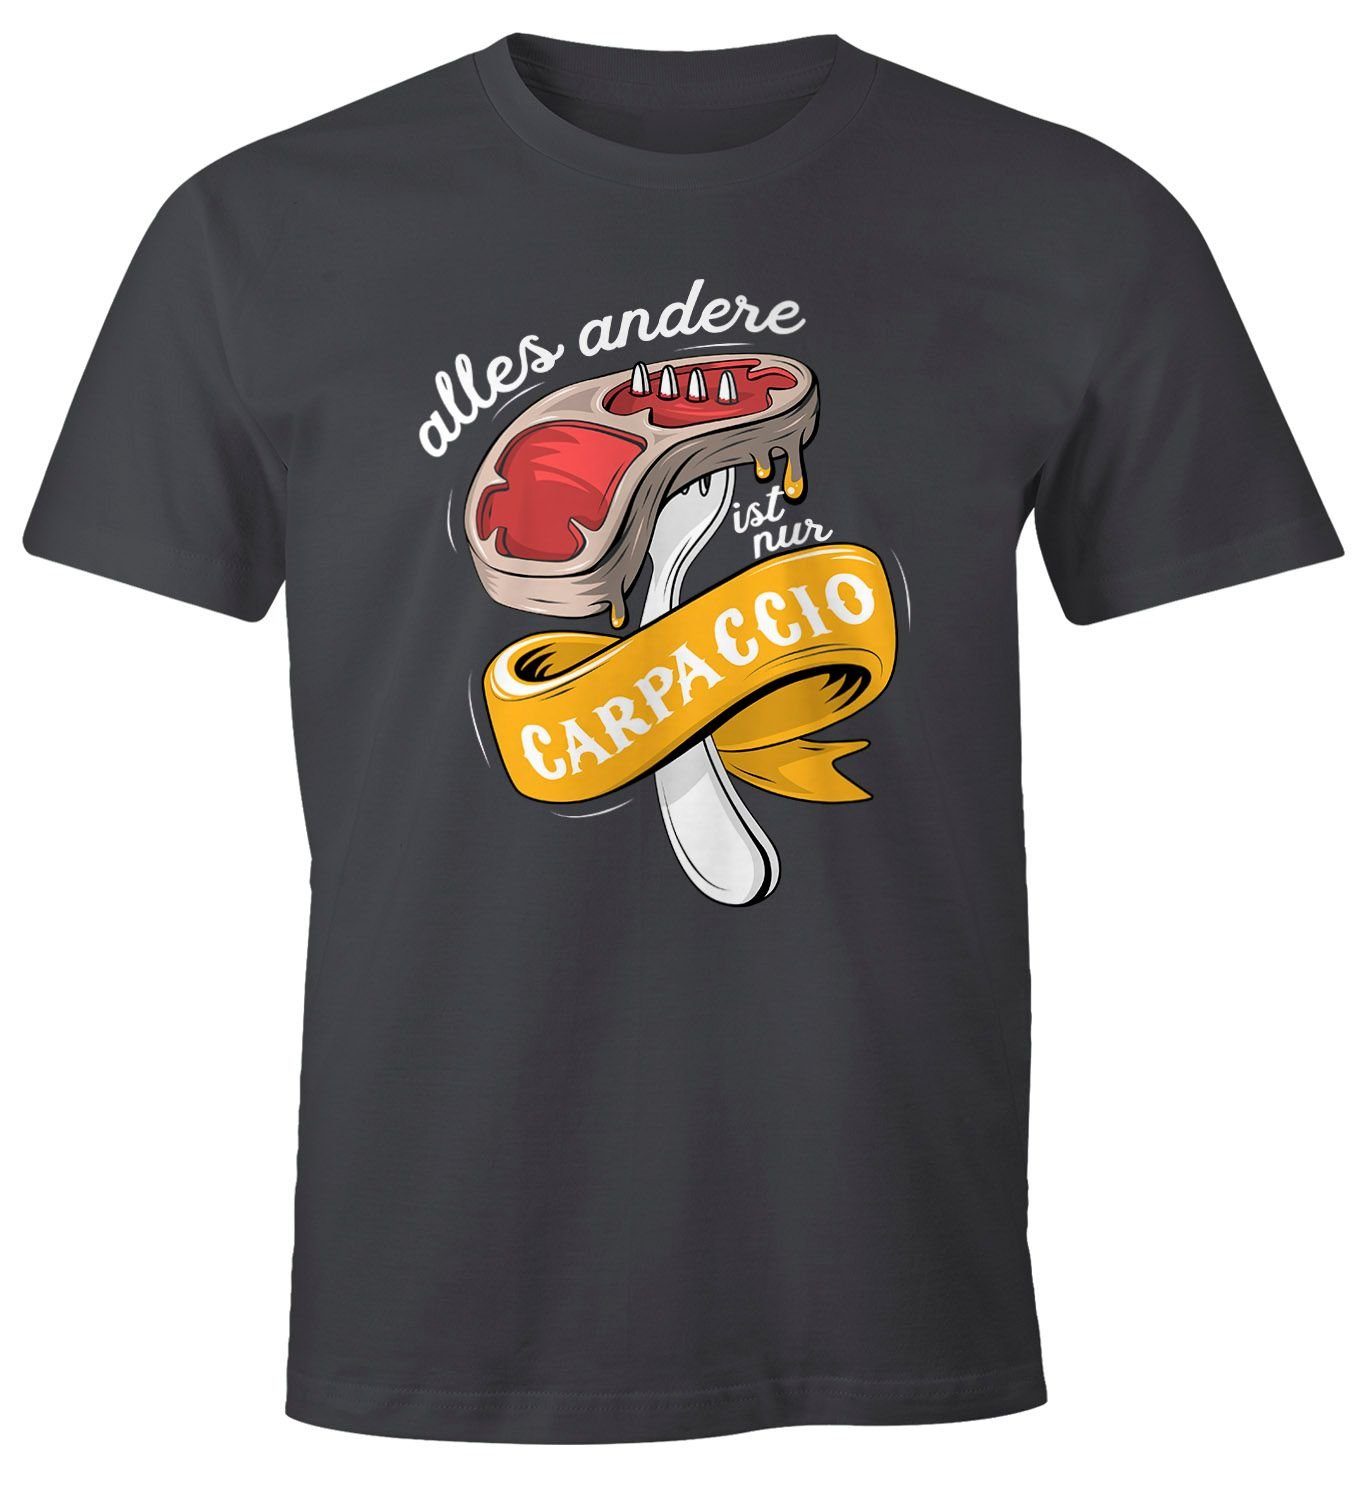 MoonWorks Print-Shirt Herren T-Shirt alles andere ist nur Carpaccio Grillen Barbecue BBQ Fleisch Fun-Shirt Moonworks® mit Print grau